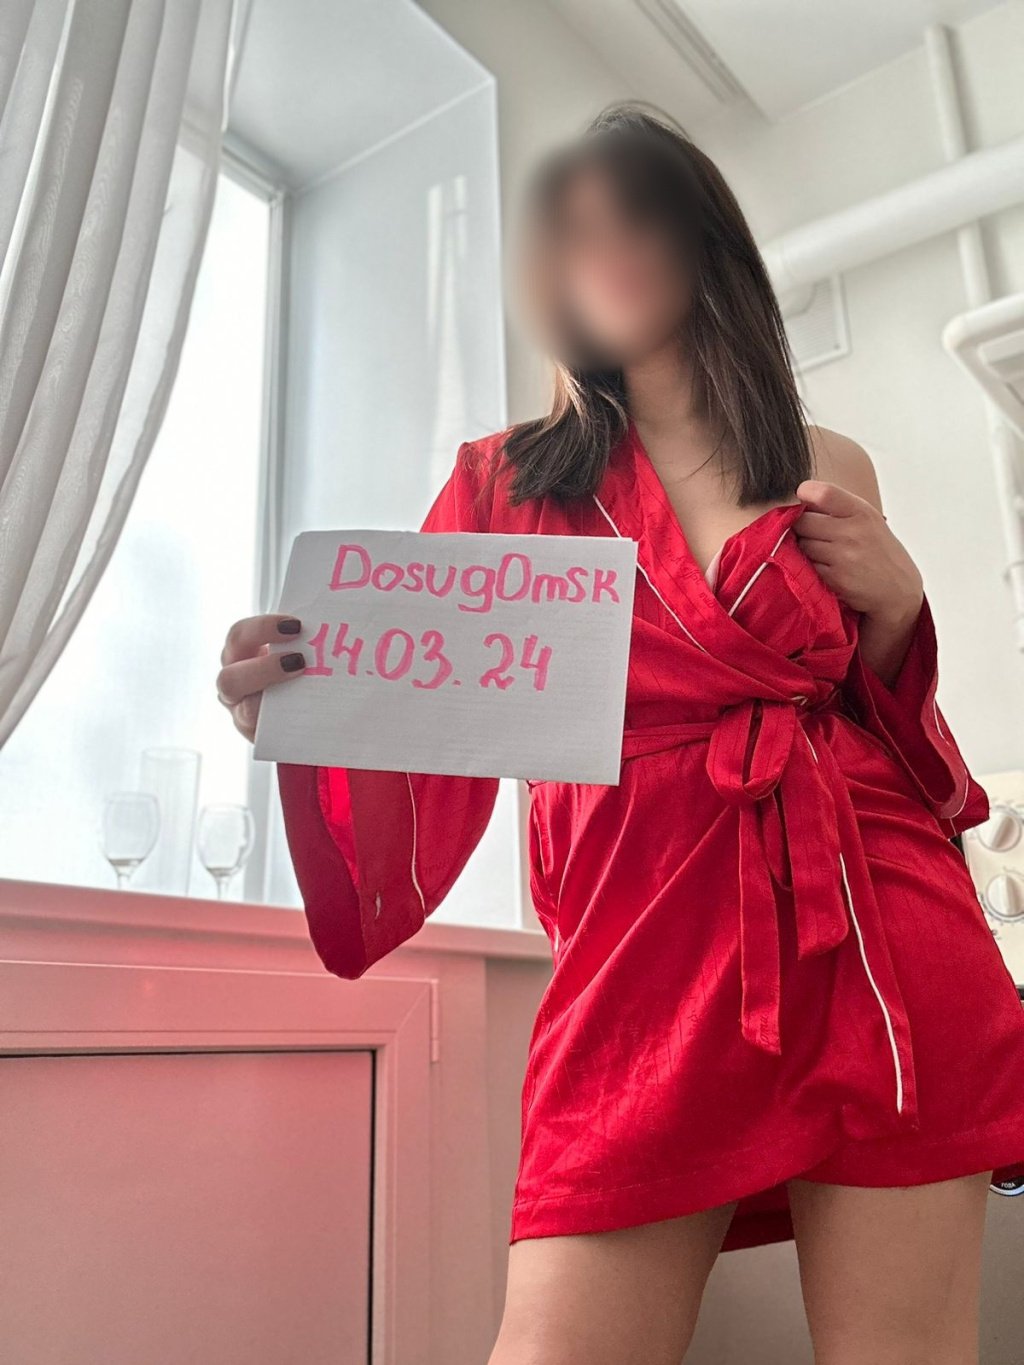 Валерия: проститутки индивидуалки в Омске